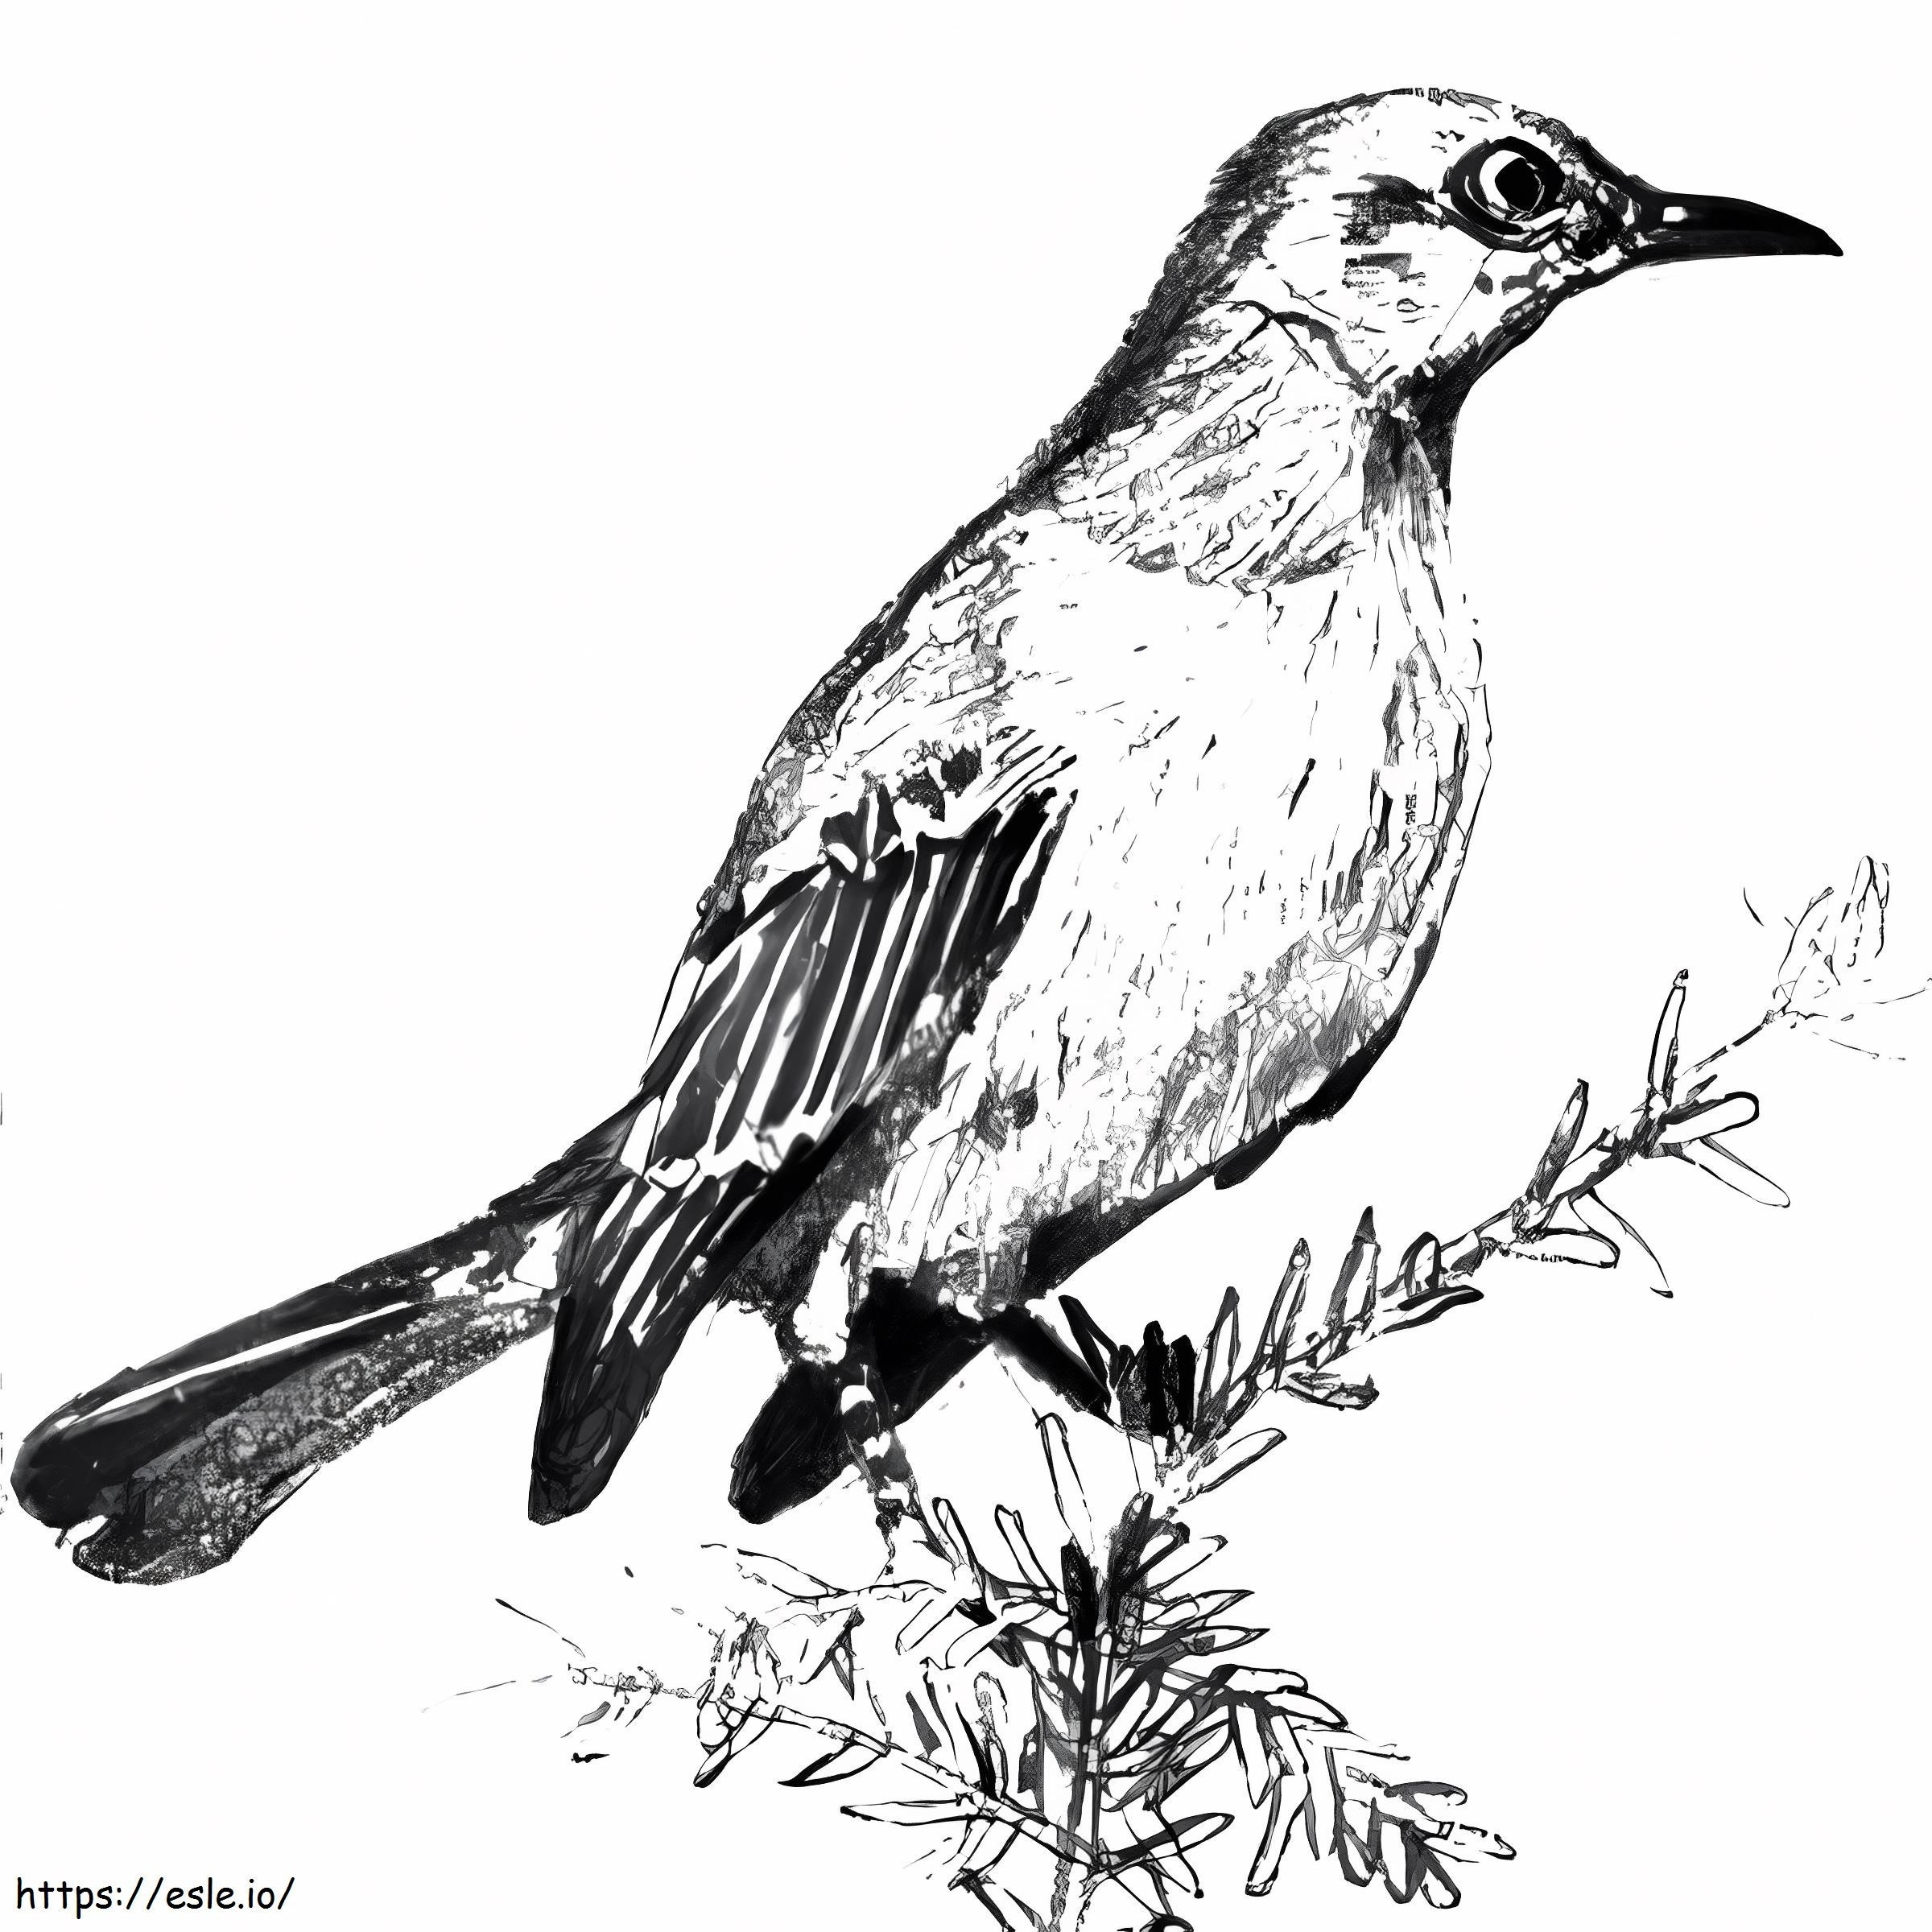 Nightingale képe kifestő